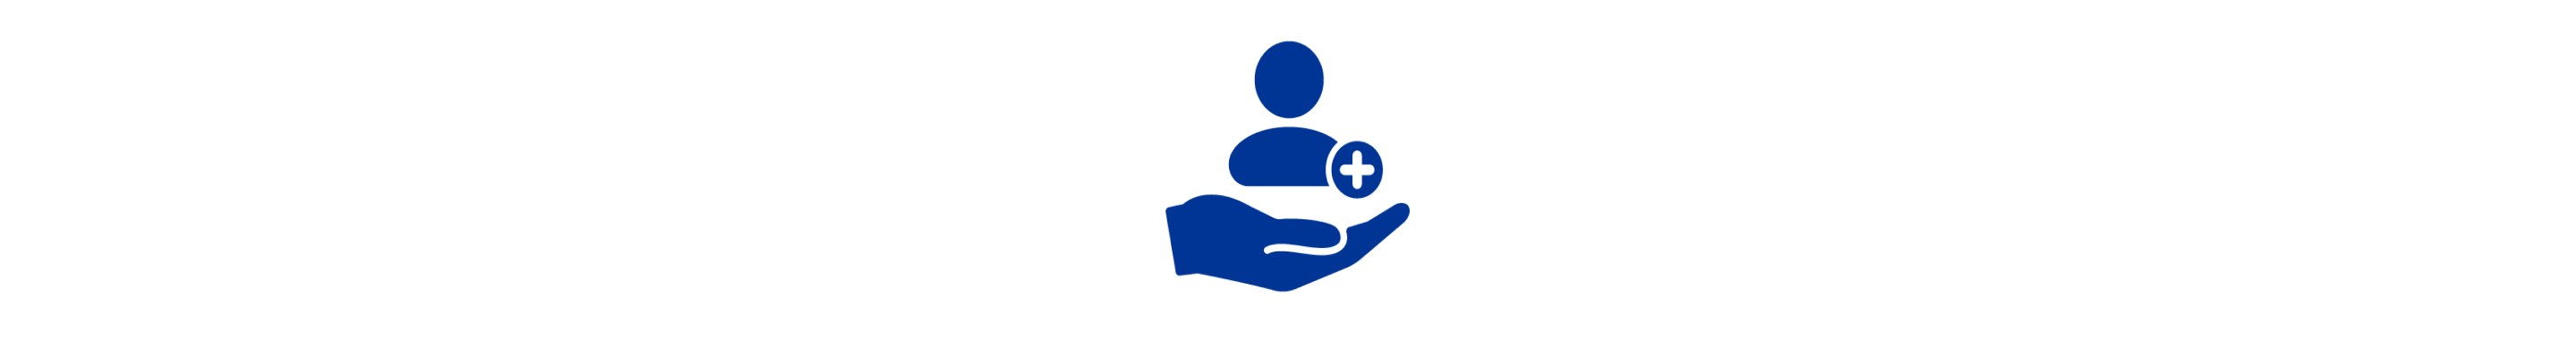 Ein blaues Symbol einer Hand, die eine Person neben einem blauen Kreuz hält.